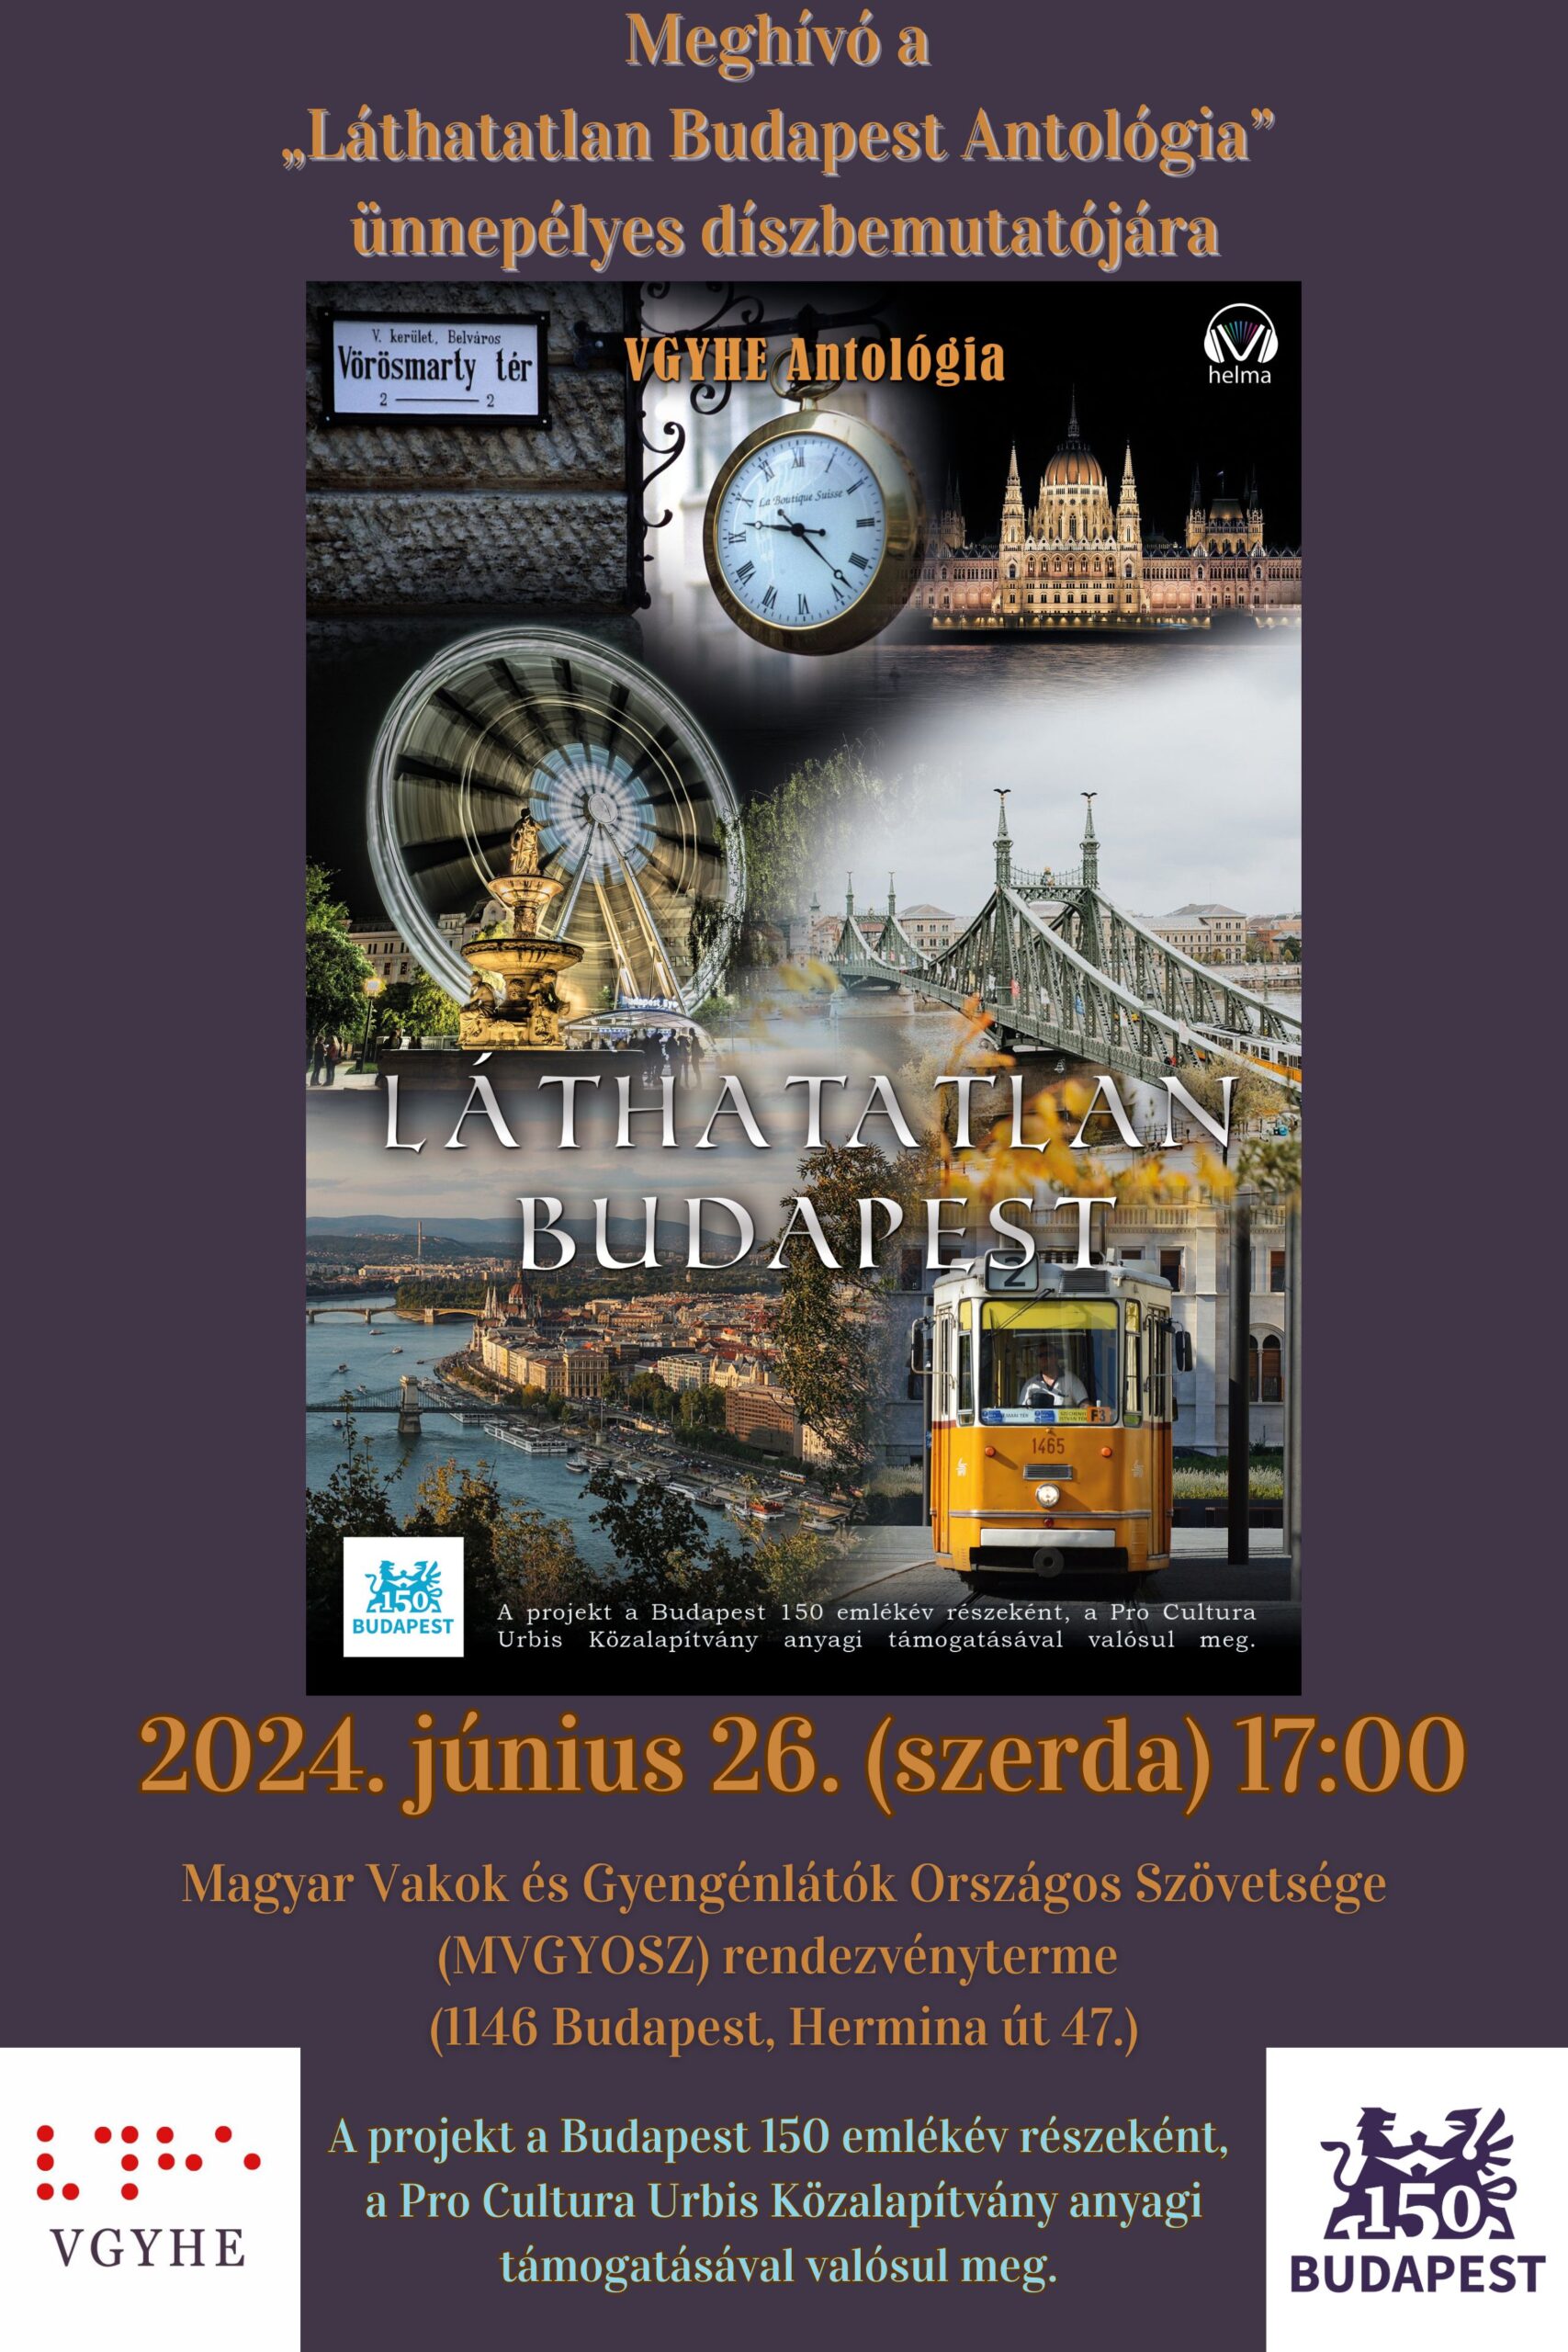 A kép egy meghívó plakát a "Láthatatlan Budapest Antológia" című könyv ünnepélyes díszbemutatójára. A plakát fő részét a könyv borítójának képe foglalja el, amely Budapest különböző ikonikus látványosságait ábrázolja, mint például: - A Parlament épülete éjszakai megvilágításban - A Szabadság híd - Egy óriáskerék (valószínűleg a Budapest Eye) - Egy régi utcai óra - Egy sárga villamos - A Duna-part panorámája A könyv címe "Láthatatlan Budapest" nagy betűkkel olvasható a borítón. A meghívó további részletei: - Dátum: 2024. június 26. (szerda) 17:00 - Helyszín: Magyar Vakok és Gyengénlátók Országos Szövetsége (MVGYOSZ) rendezvényterme (1146 Budapest, Hermina út 47.) A plakát alján látható, hogy a projekt a Budapest 150 emlékév részeként, a Pro Cultura Urbis Közalapítvány anyagi támogatásával valósul meg. A plakáton szerepel még a VGYHE logója, valamint Budapest 150. évfordulójának logója. Az egész plakát design-ja elegáns, sötét háttérrel és arany színű betűkkel a főcímben, ami kiemeli az esemény ünnepélyes jellegét. (a kép leírását a Claude generálta)